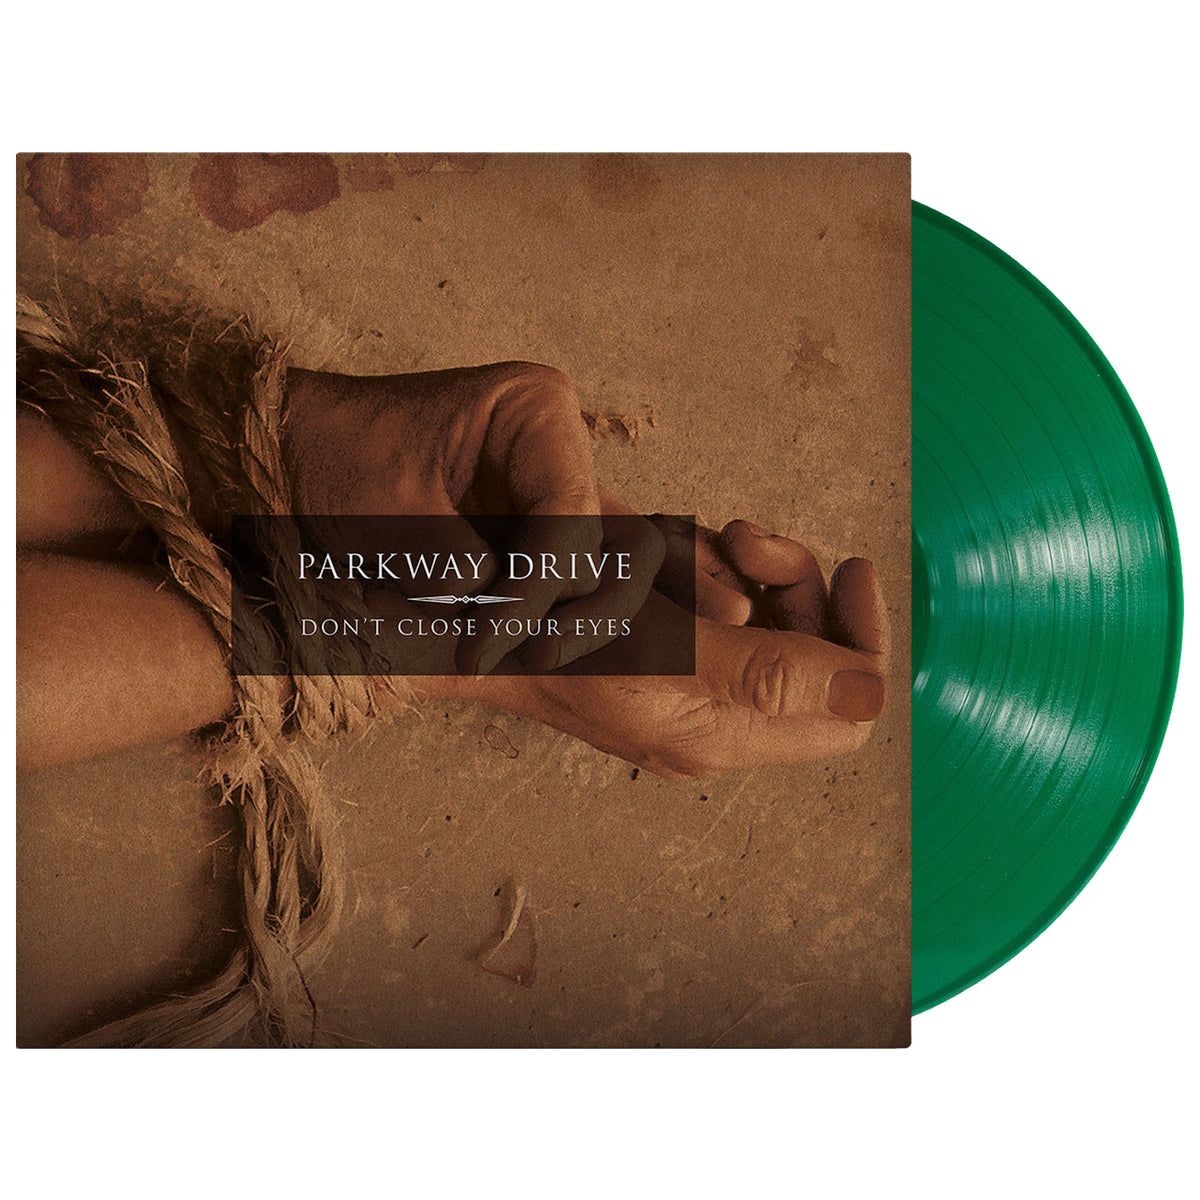 Parkway Drive – Reverence (2018, Bone w/ Brown Splatter, Vinyl